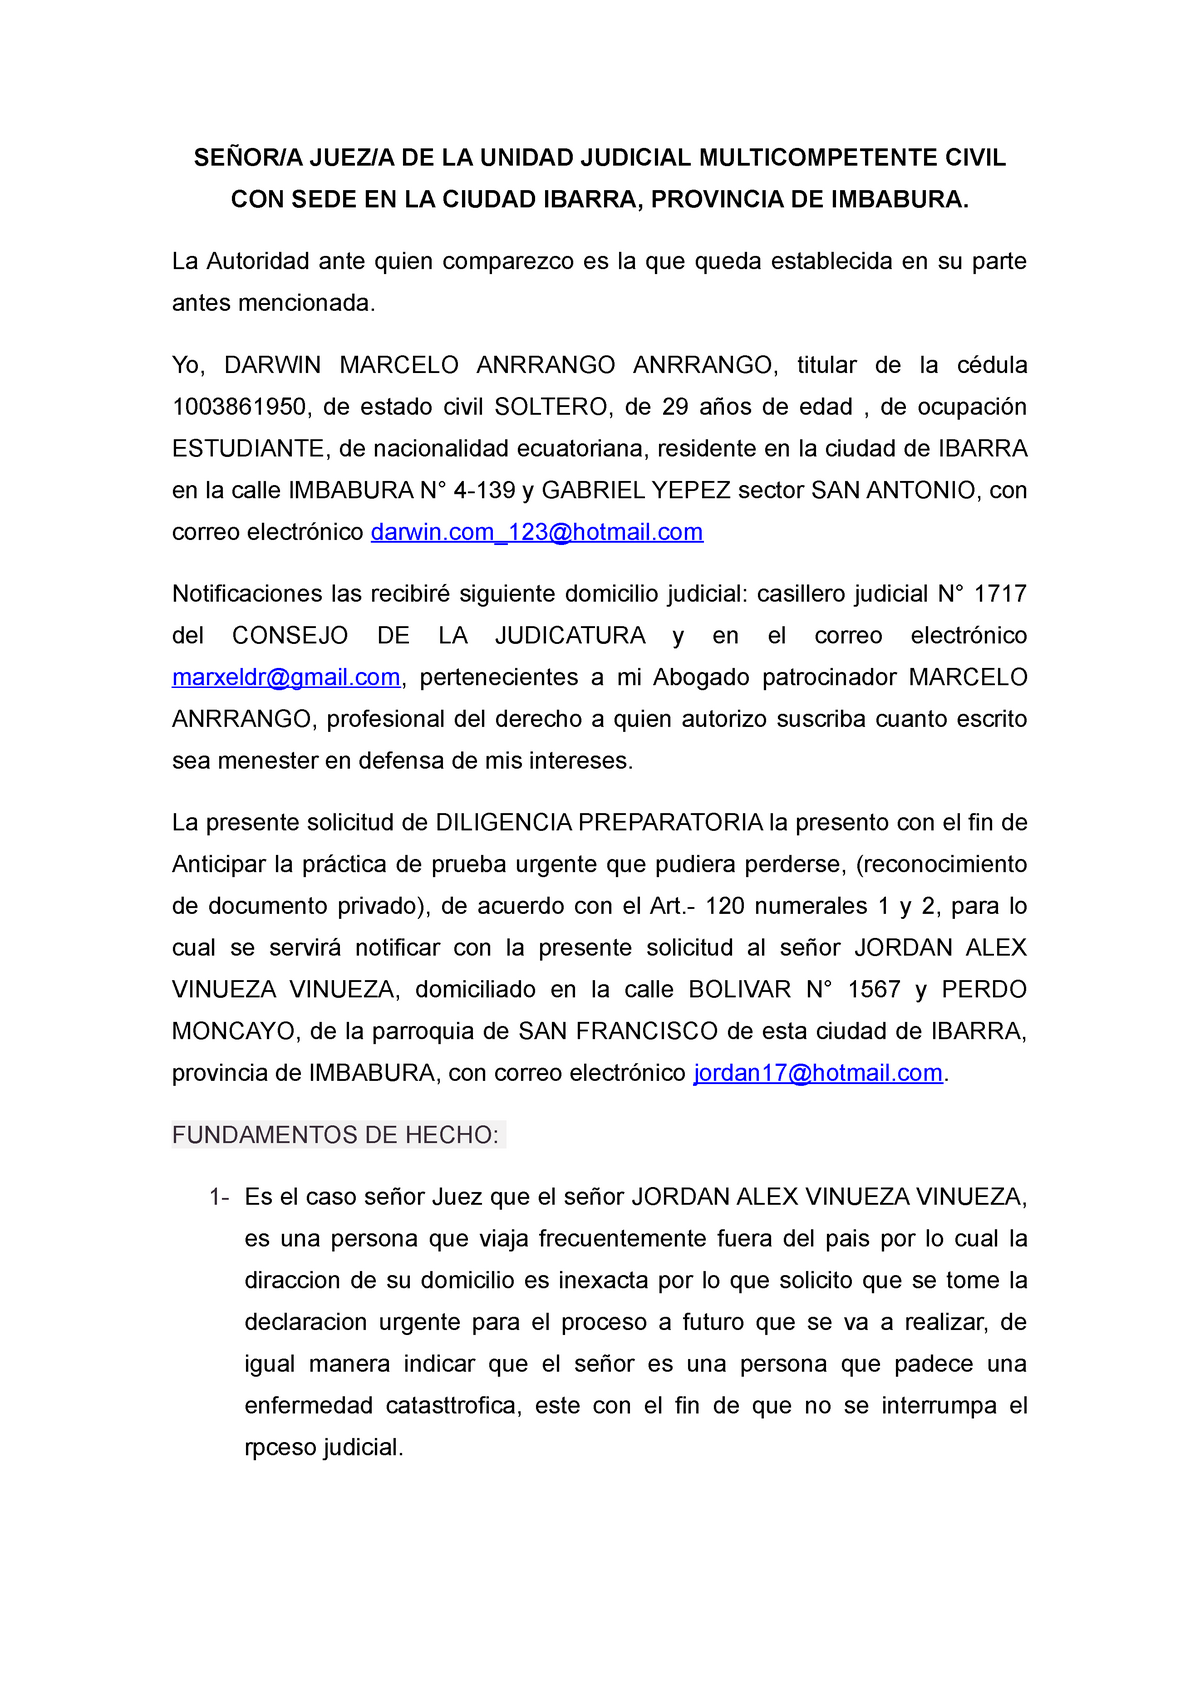 Diligencia Preparatoria - SEÑOR/A JUEZ/A DE LA UNIDAD JUDICIAL  MULTICOMPETENTE CIVIL CON SEDE EN LA - Studocu